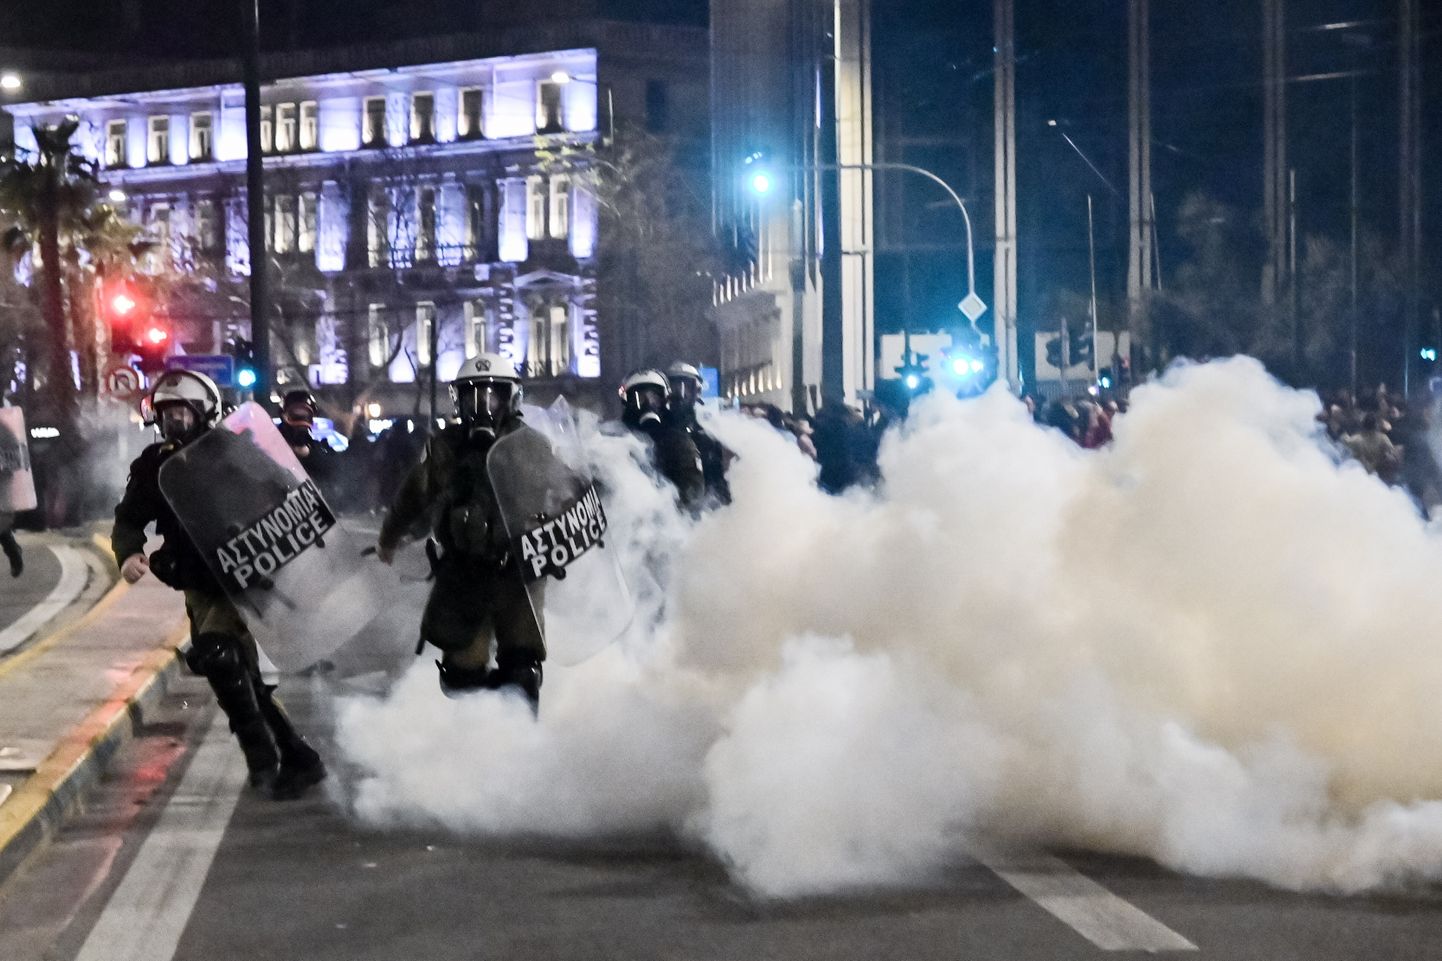 Ateenas jätkuvad meeleavaldused on toonud kaasa ka kokkupõrked politseiga.